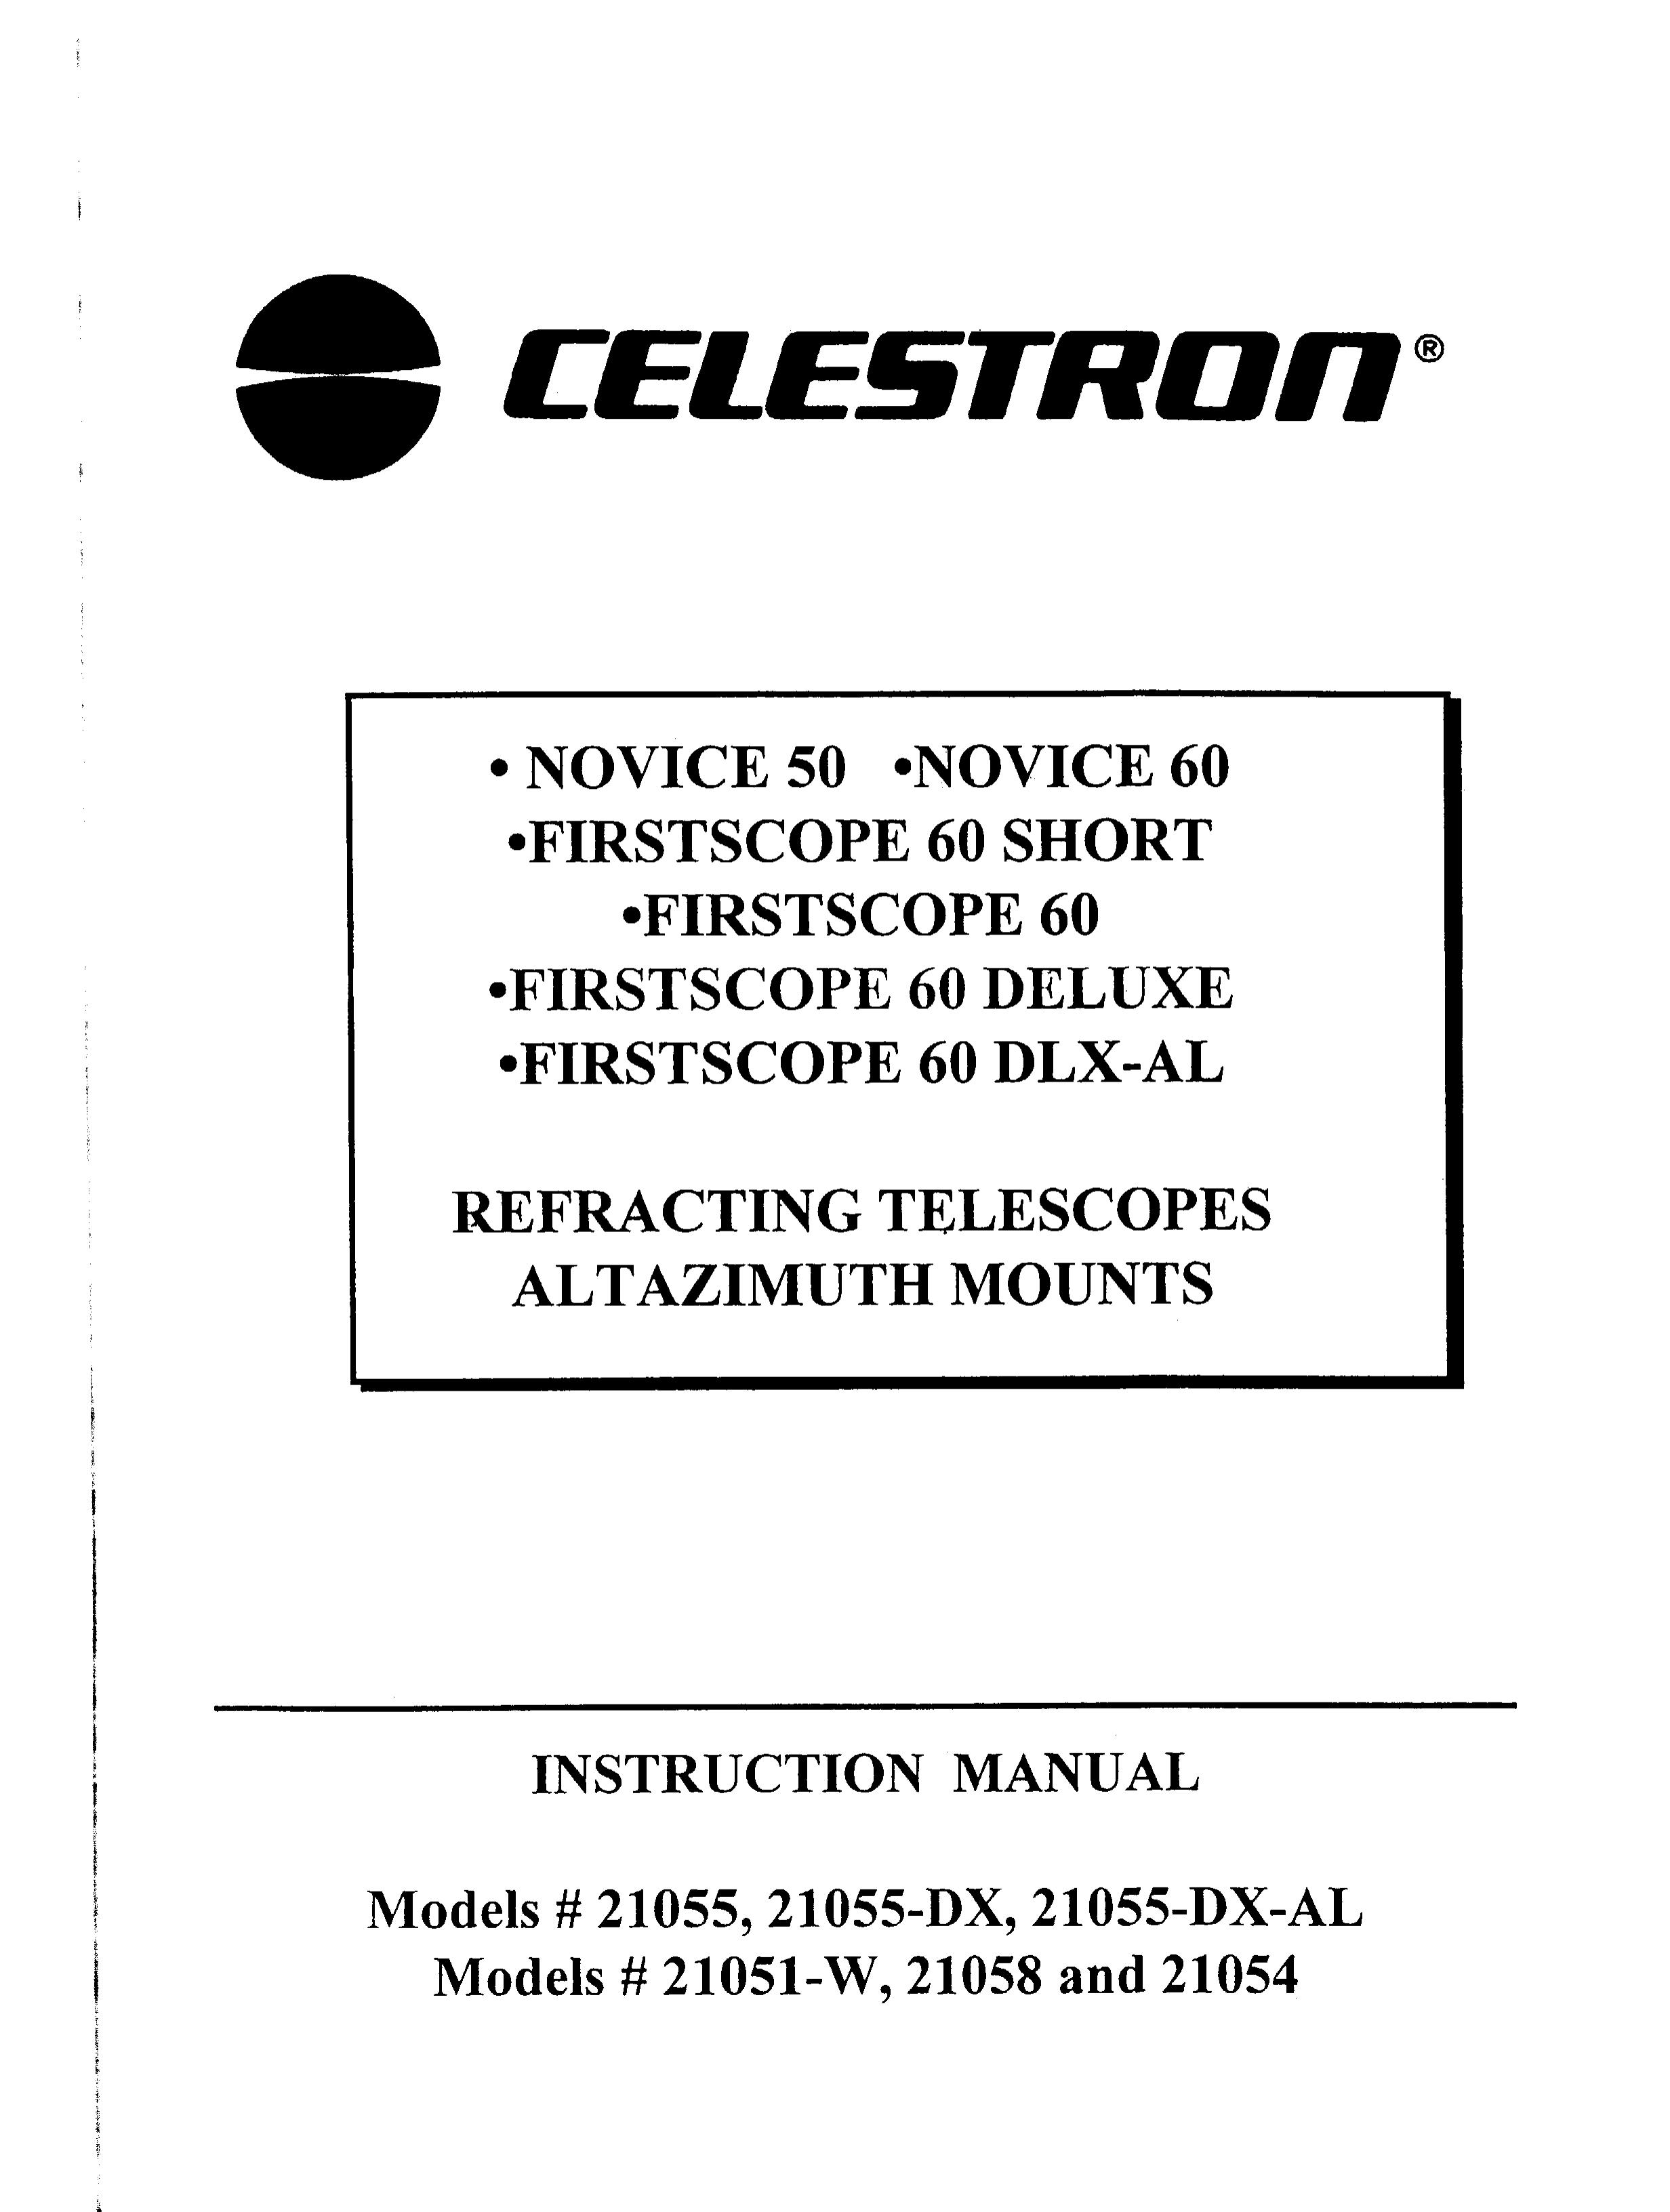 Celestron 21055 Telescope User Manual